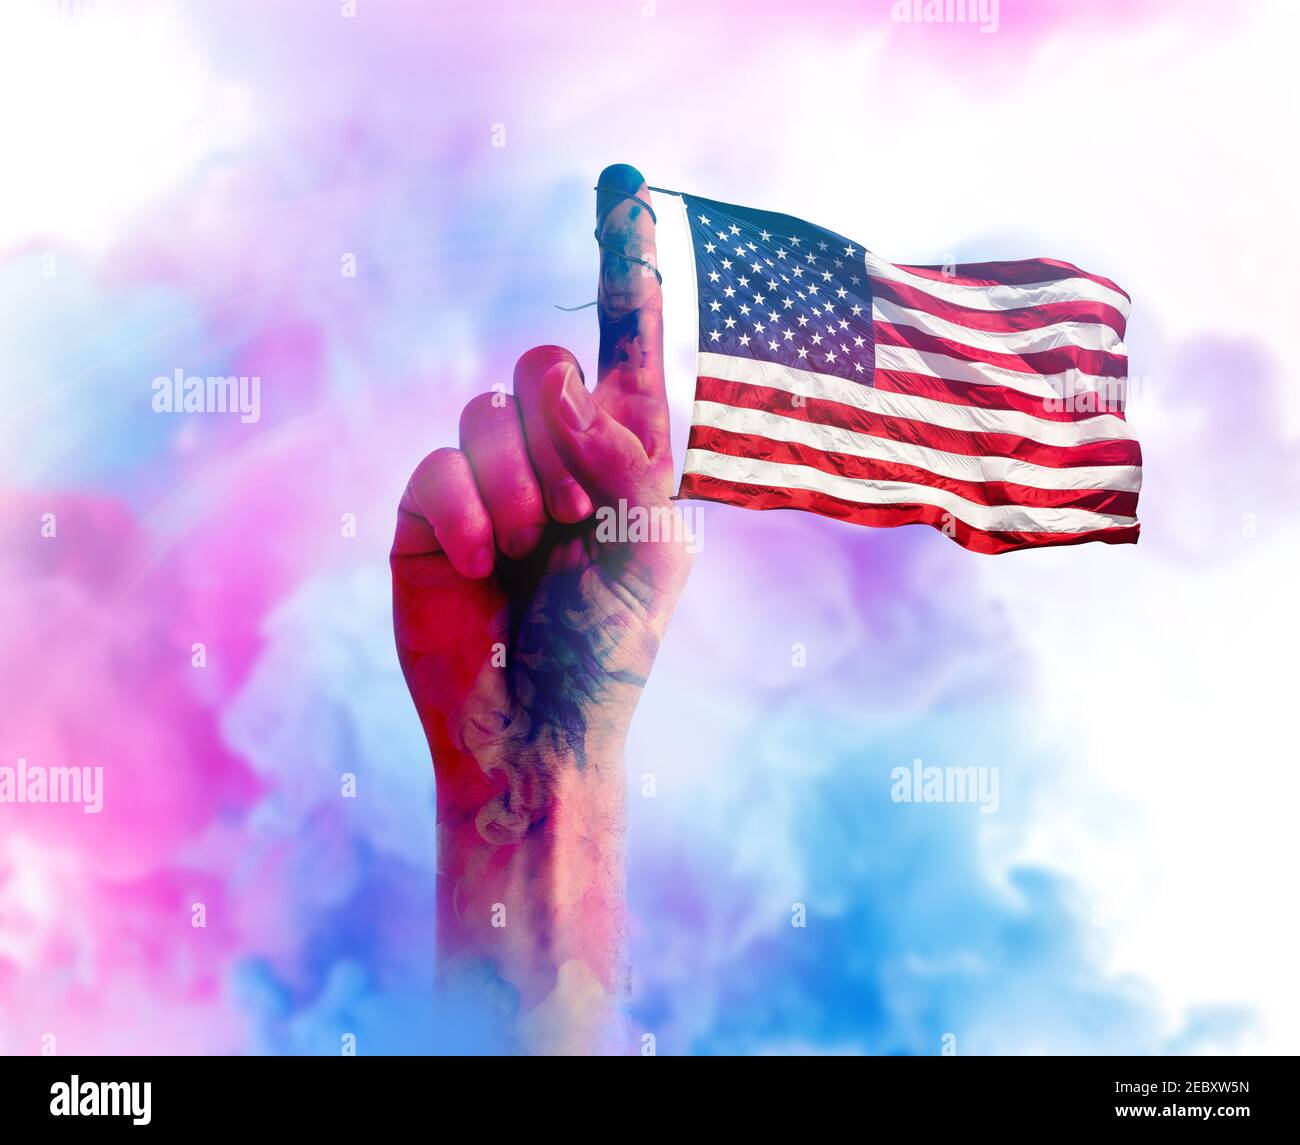 Mano con la bandera americana atada en su dedo índice. Concepto de tema patriótico. Foto de stock